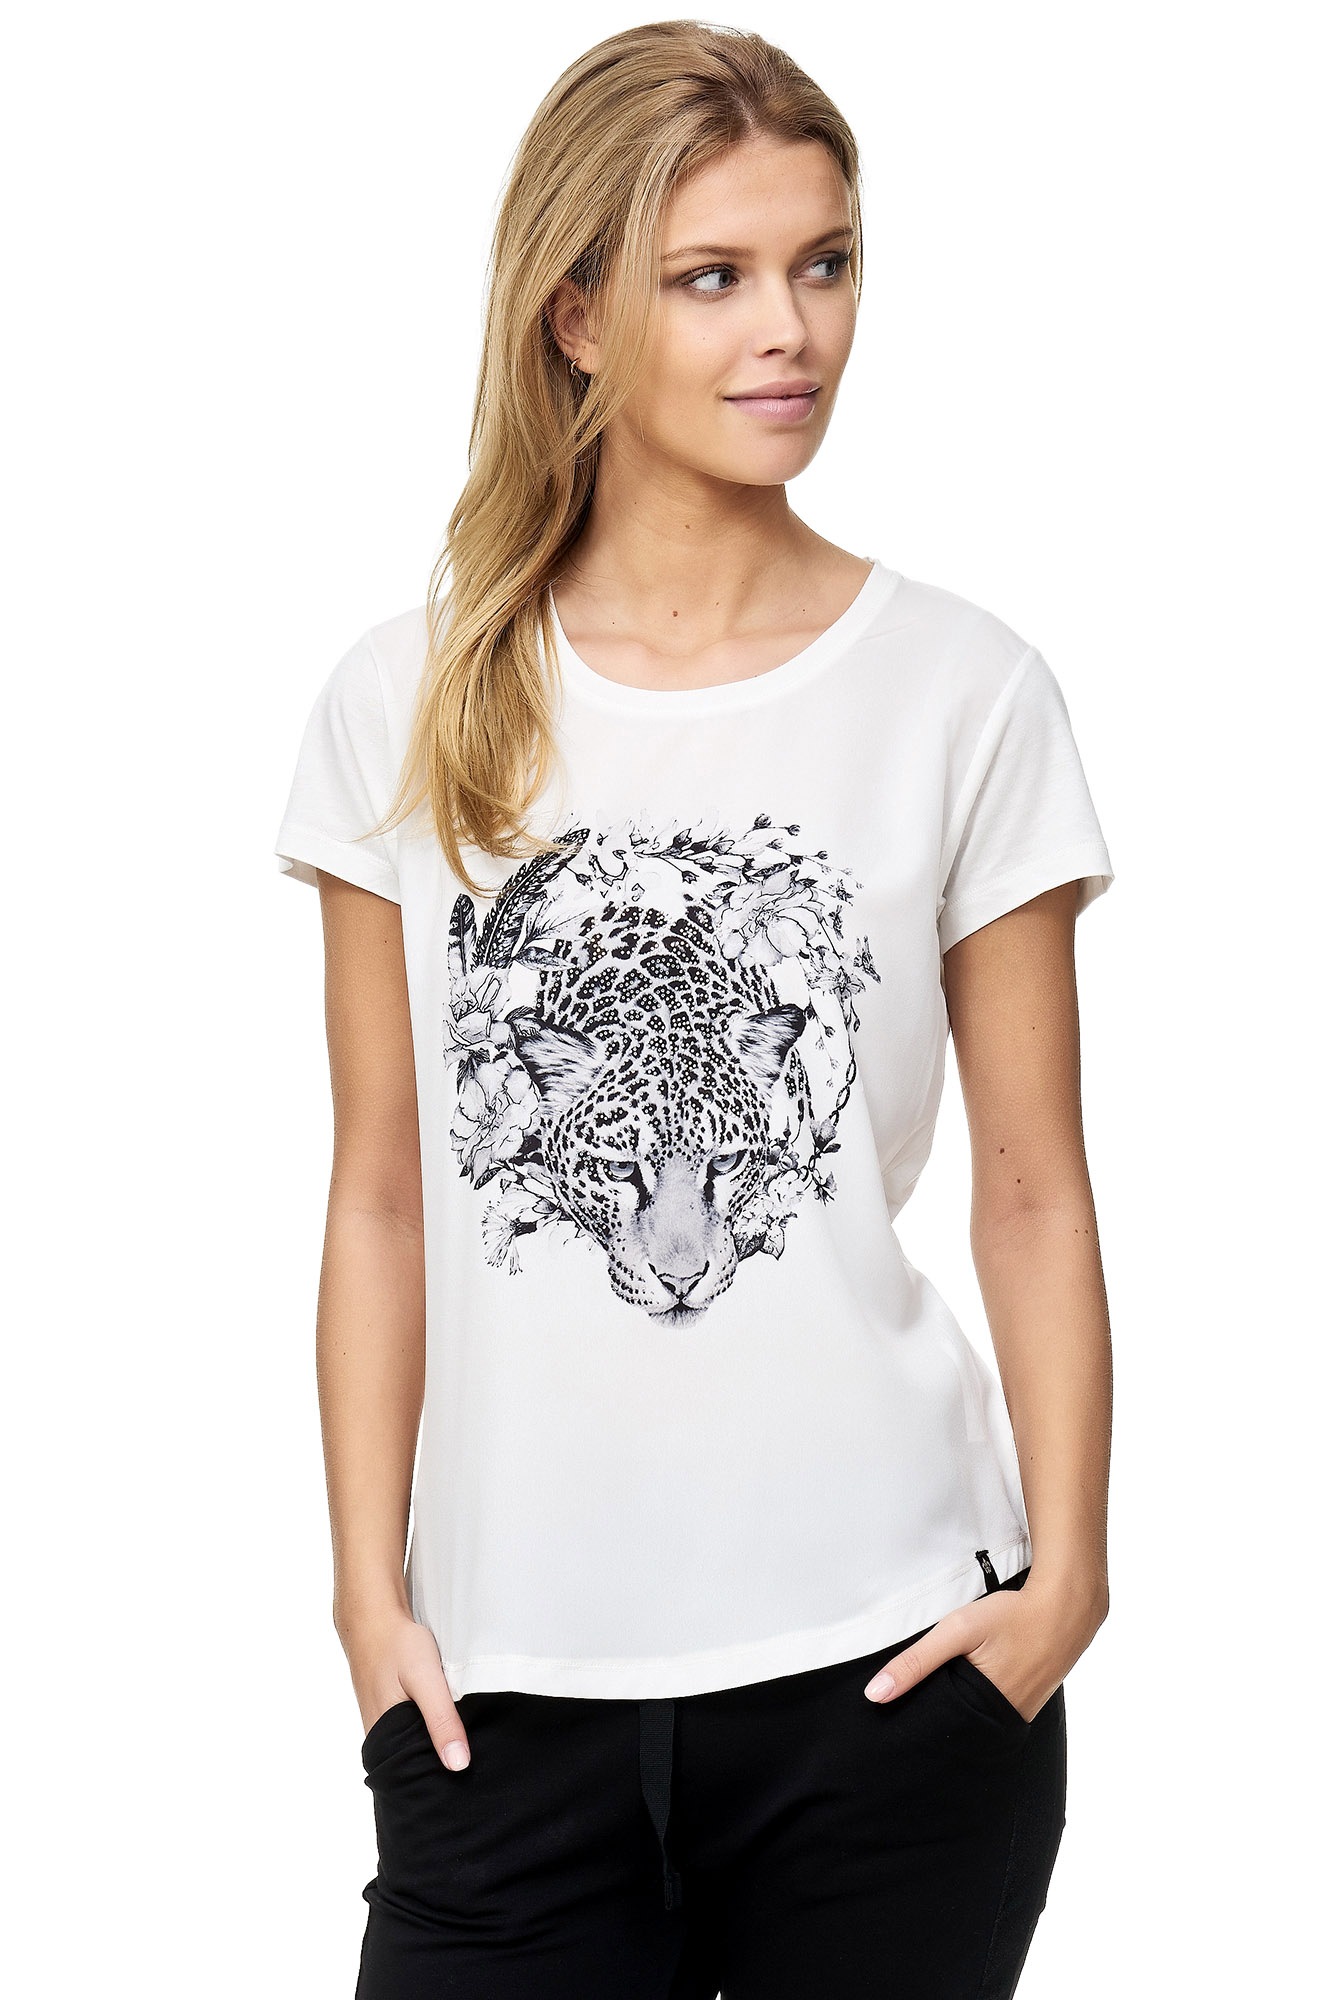 Decay T-Shirt, Leoparden-Aufdruck shoppen mit